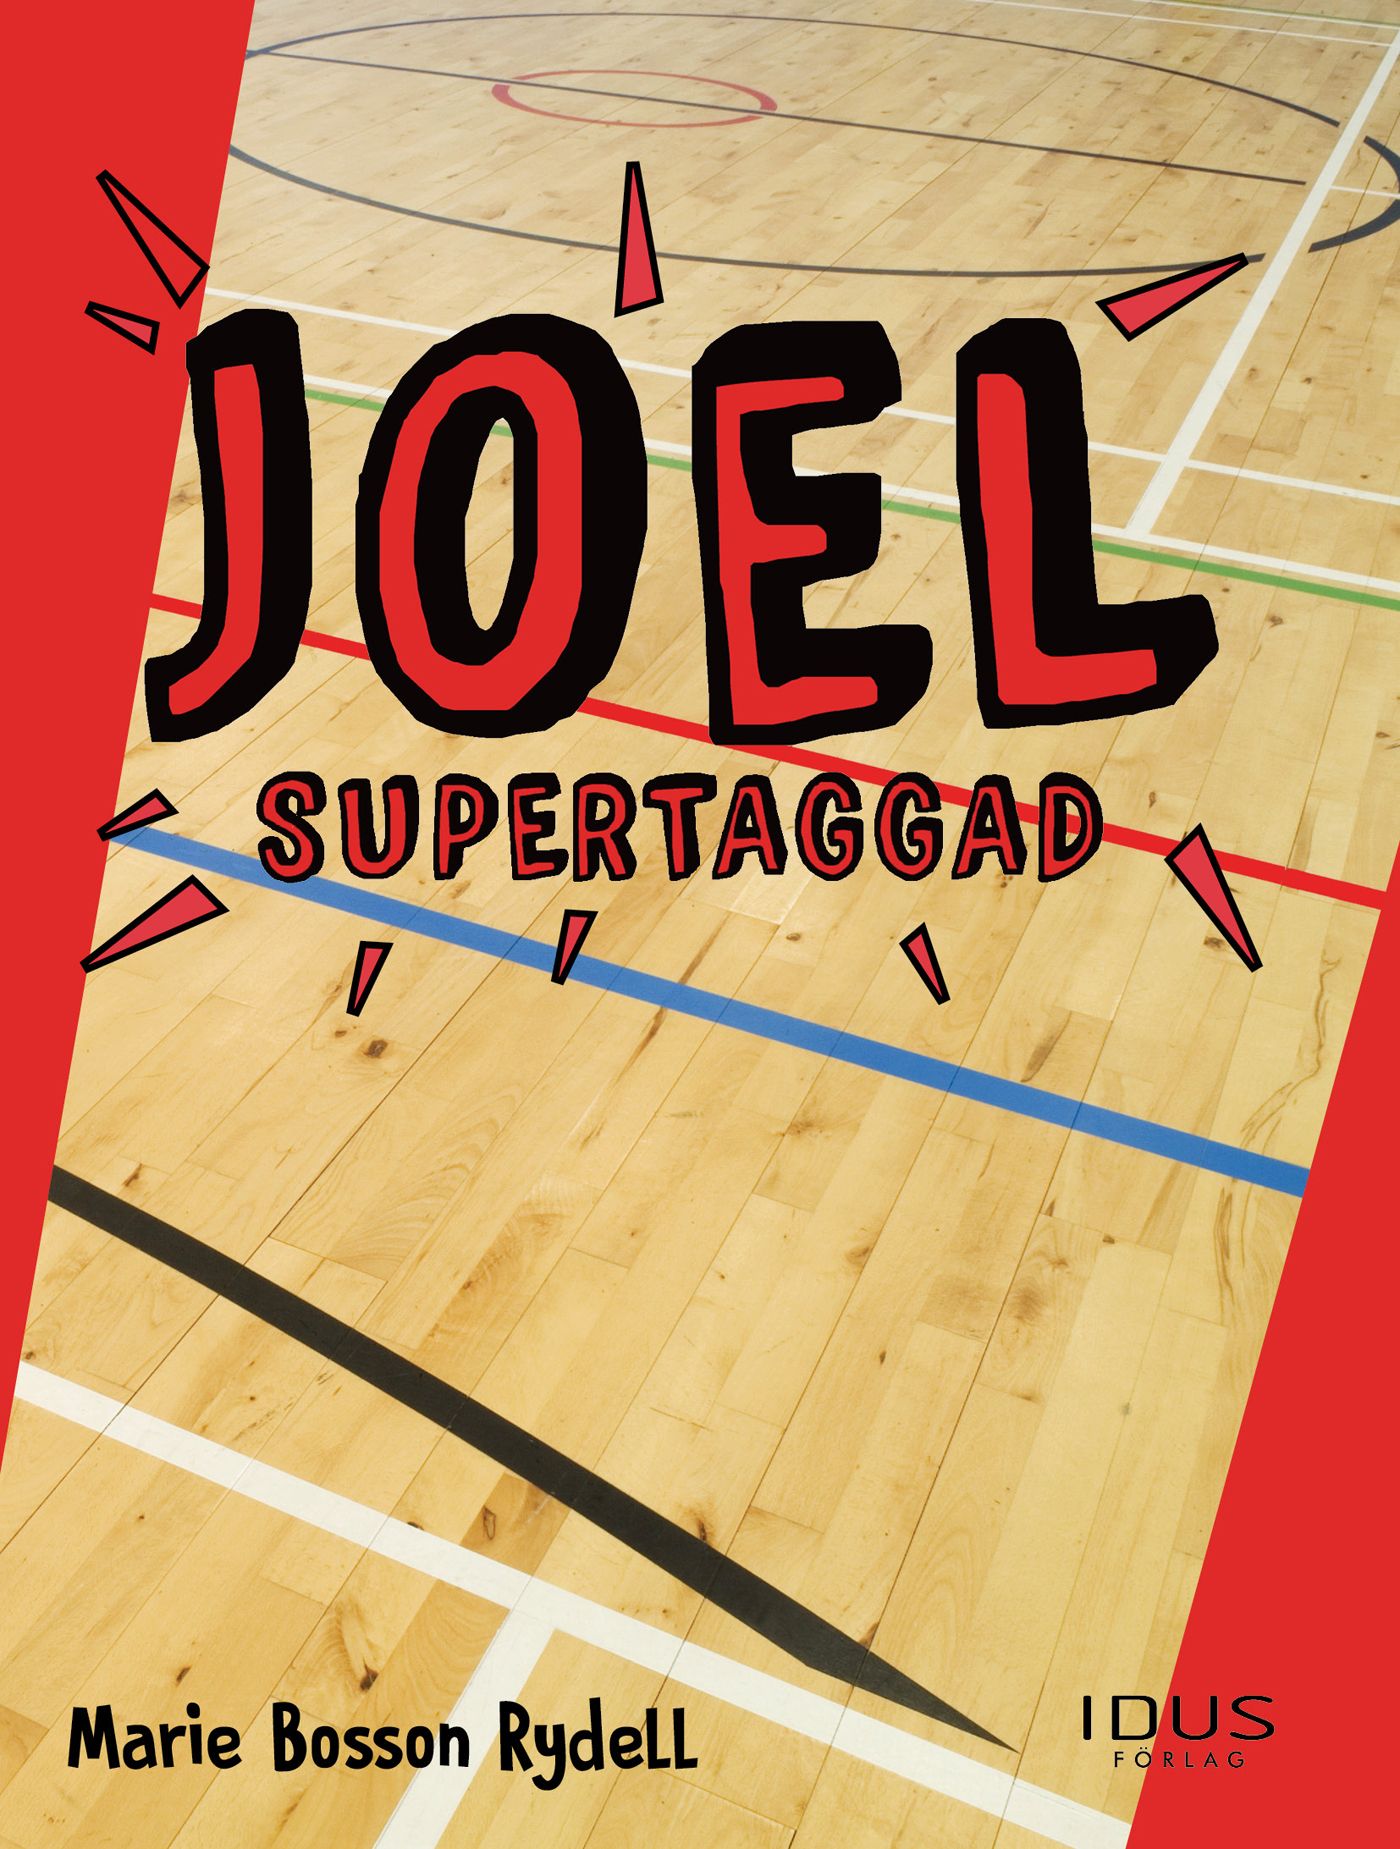 Joel - Supertaggad, e-bog af Marie Bosson Rydell